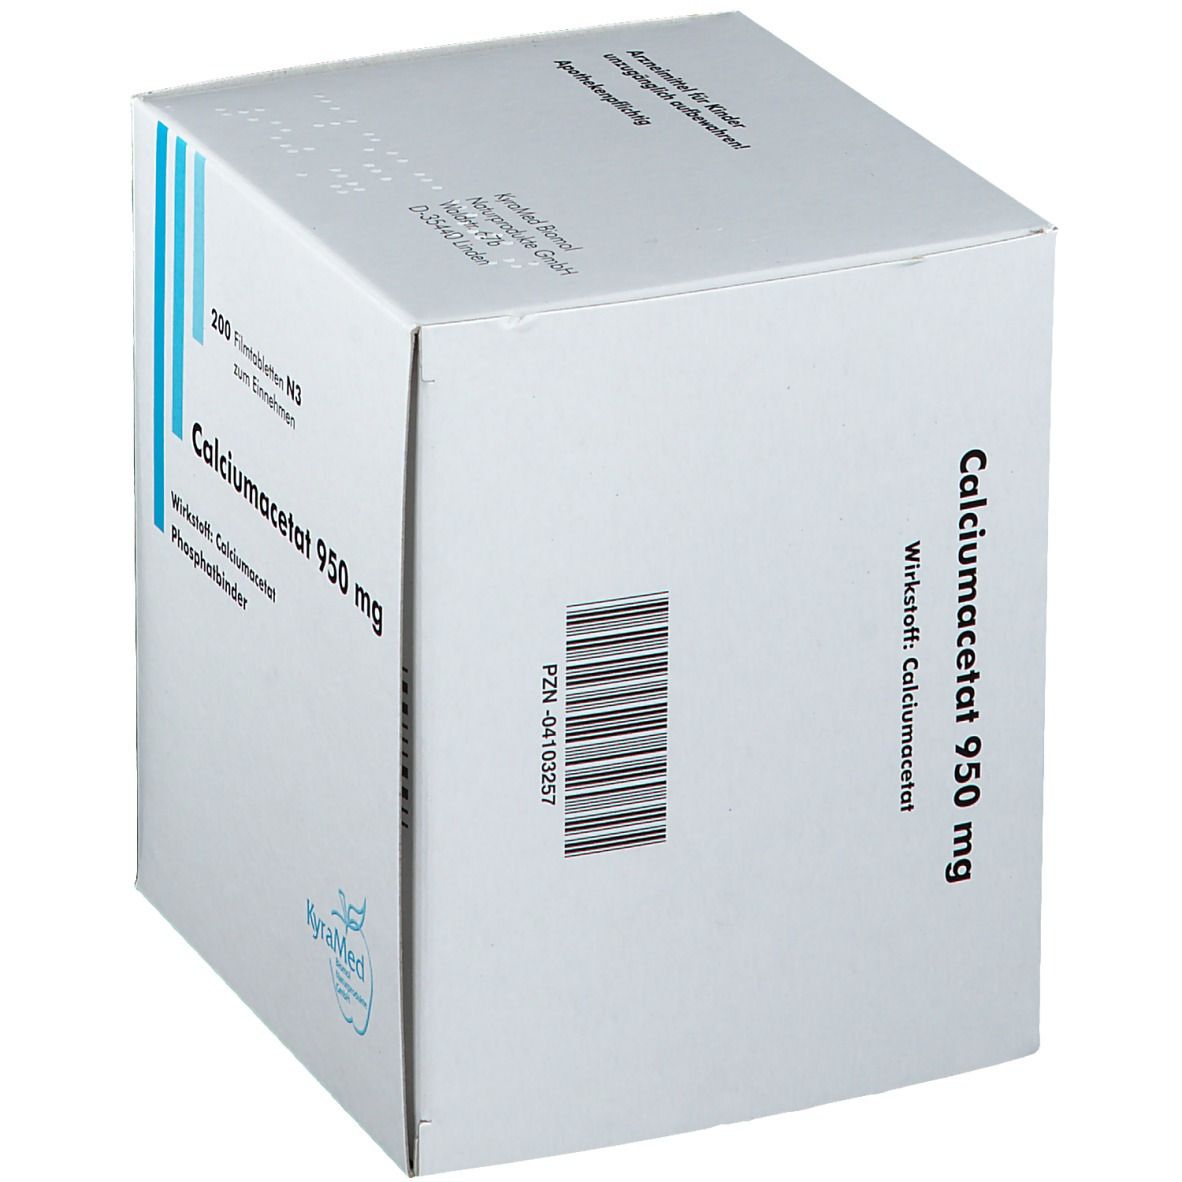 Calciumacetat 950 mg Filmtabletten